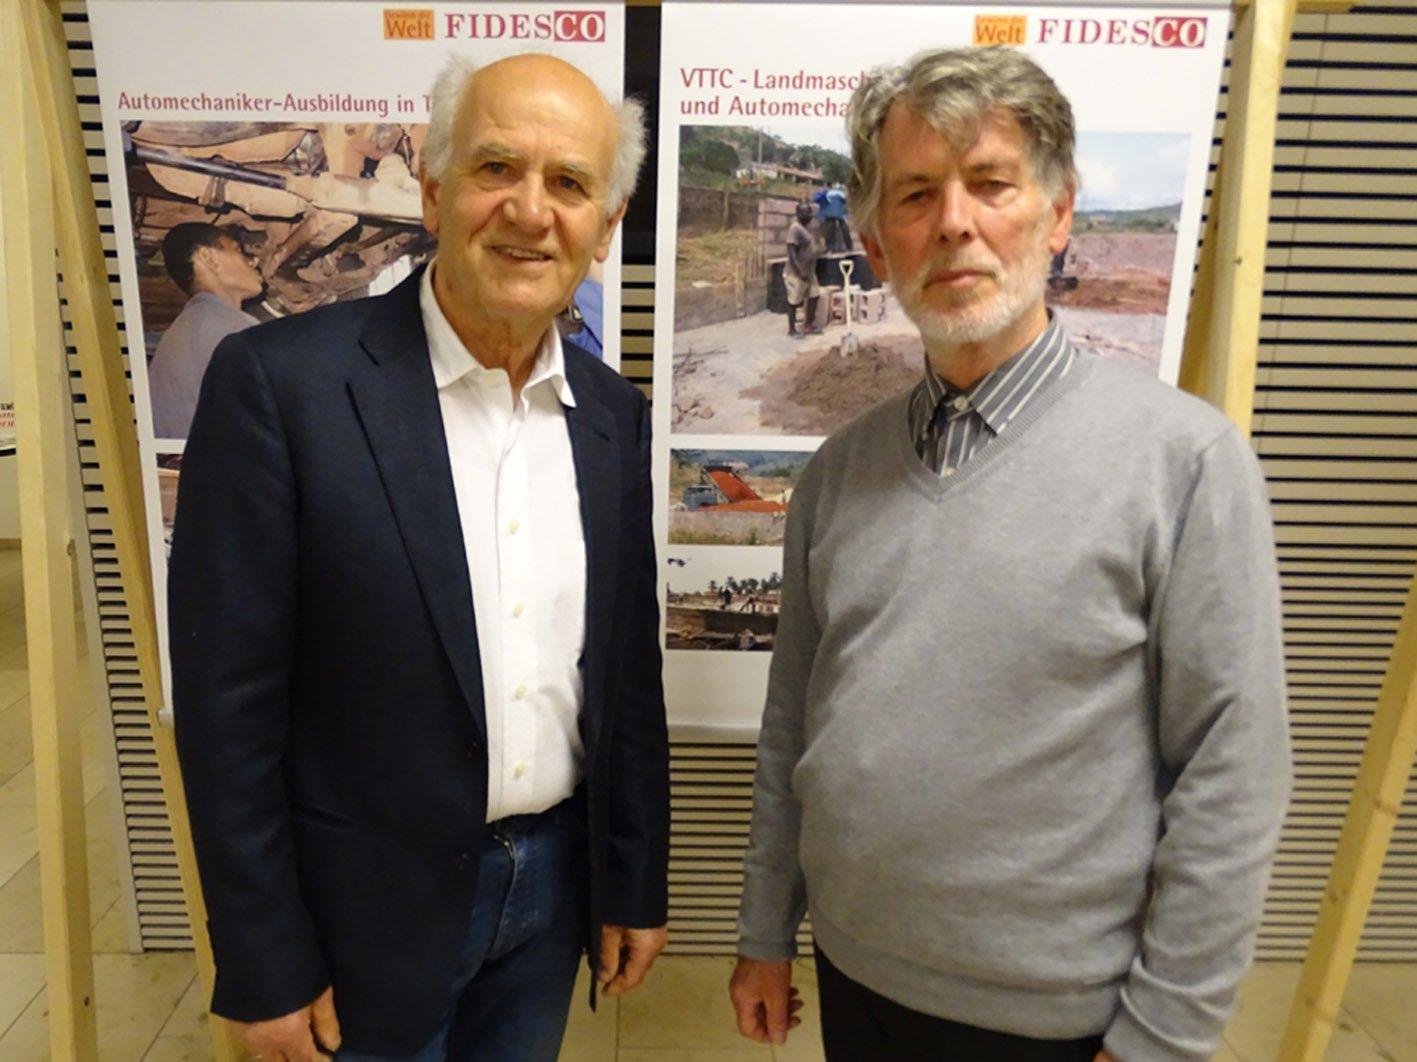 Hugo Ölz (r.) und Werner Ilg informierten über das FIDESCO-Projekt in Enugu.